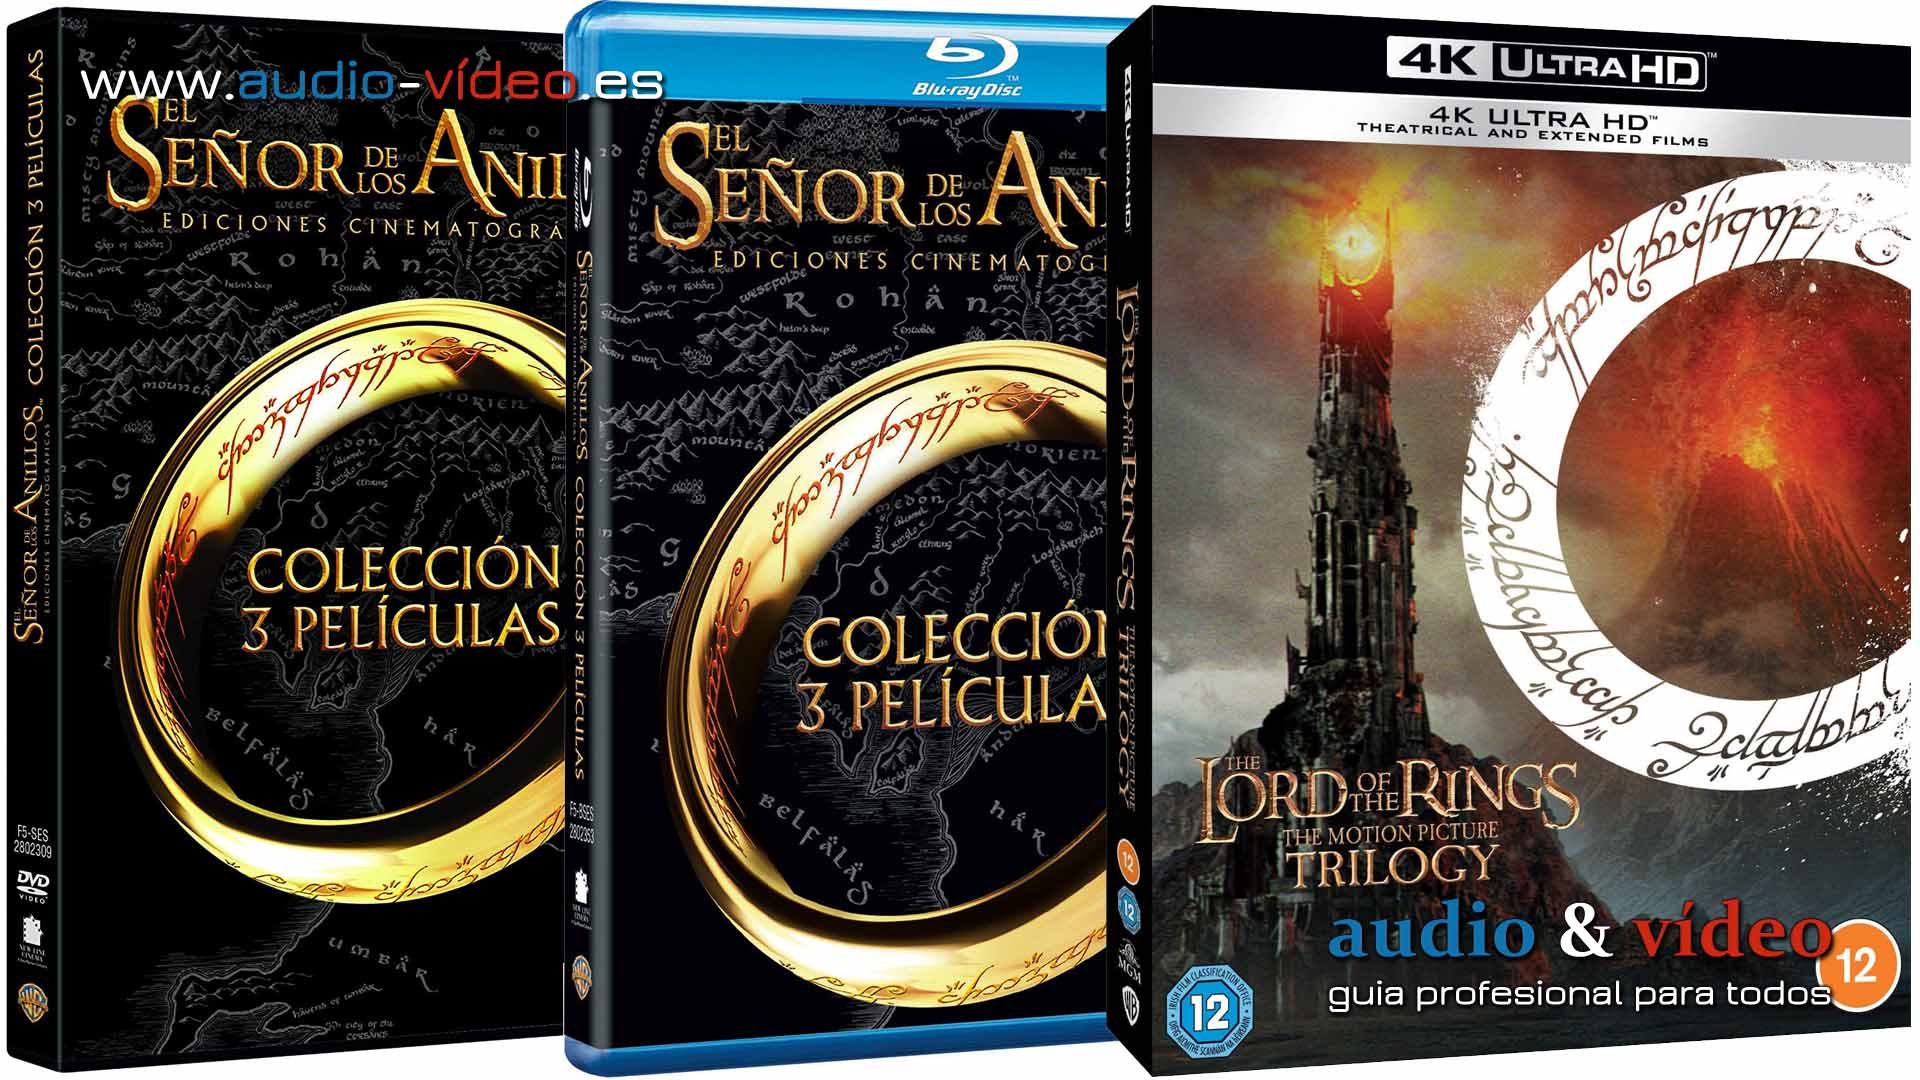 El Señor de los Anillos – 4K UHD, BluRay y DVD + Extra en articulo – Banda Sonora / Soundtrack completo